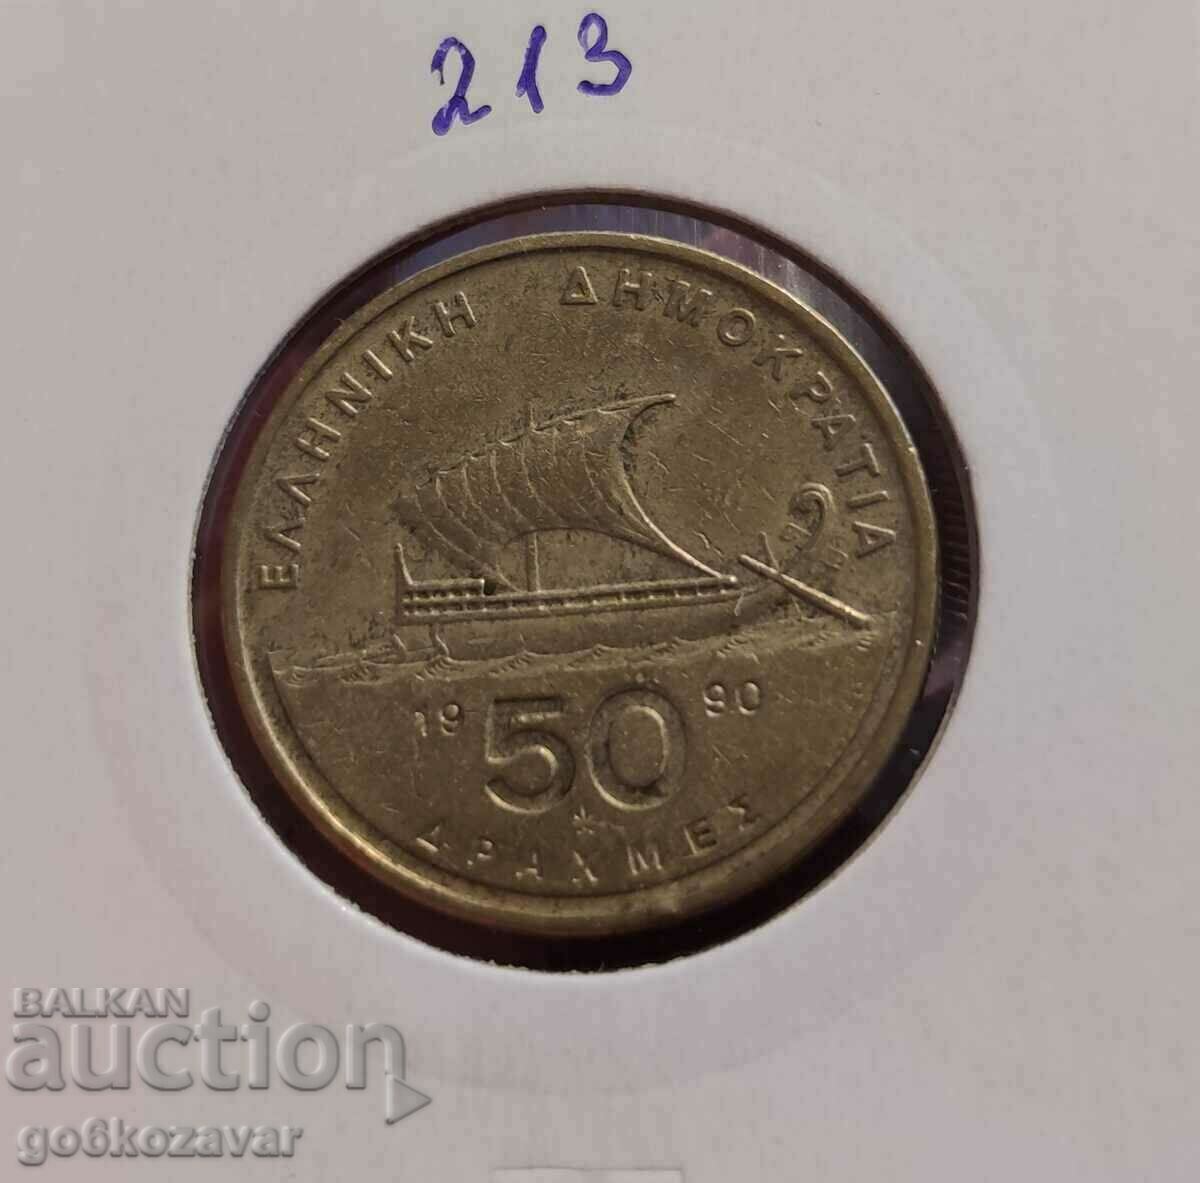 Greece 50 drachmas 1990